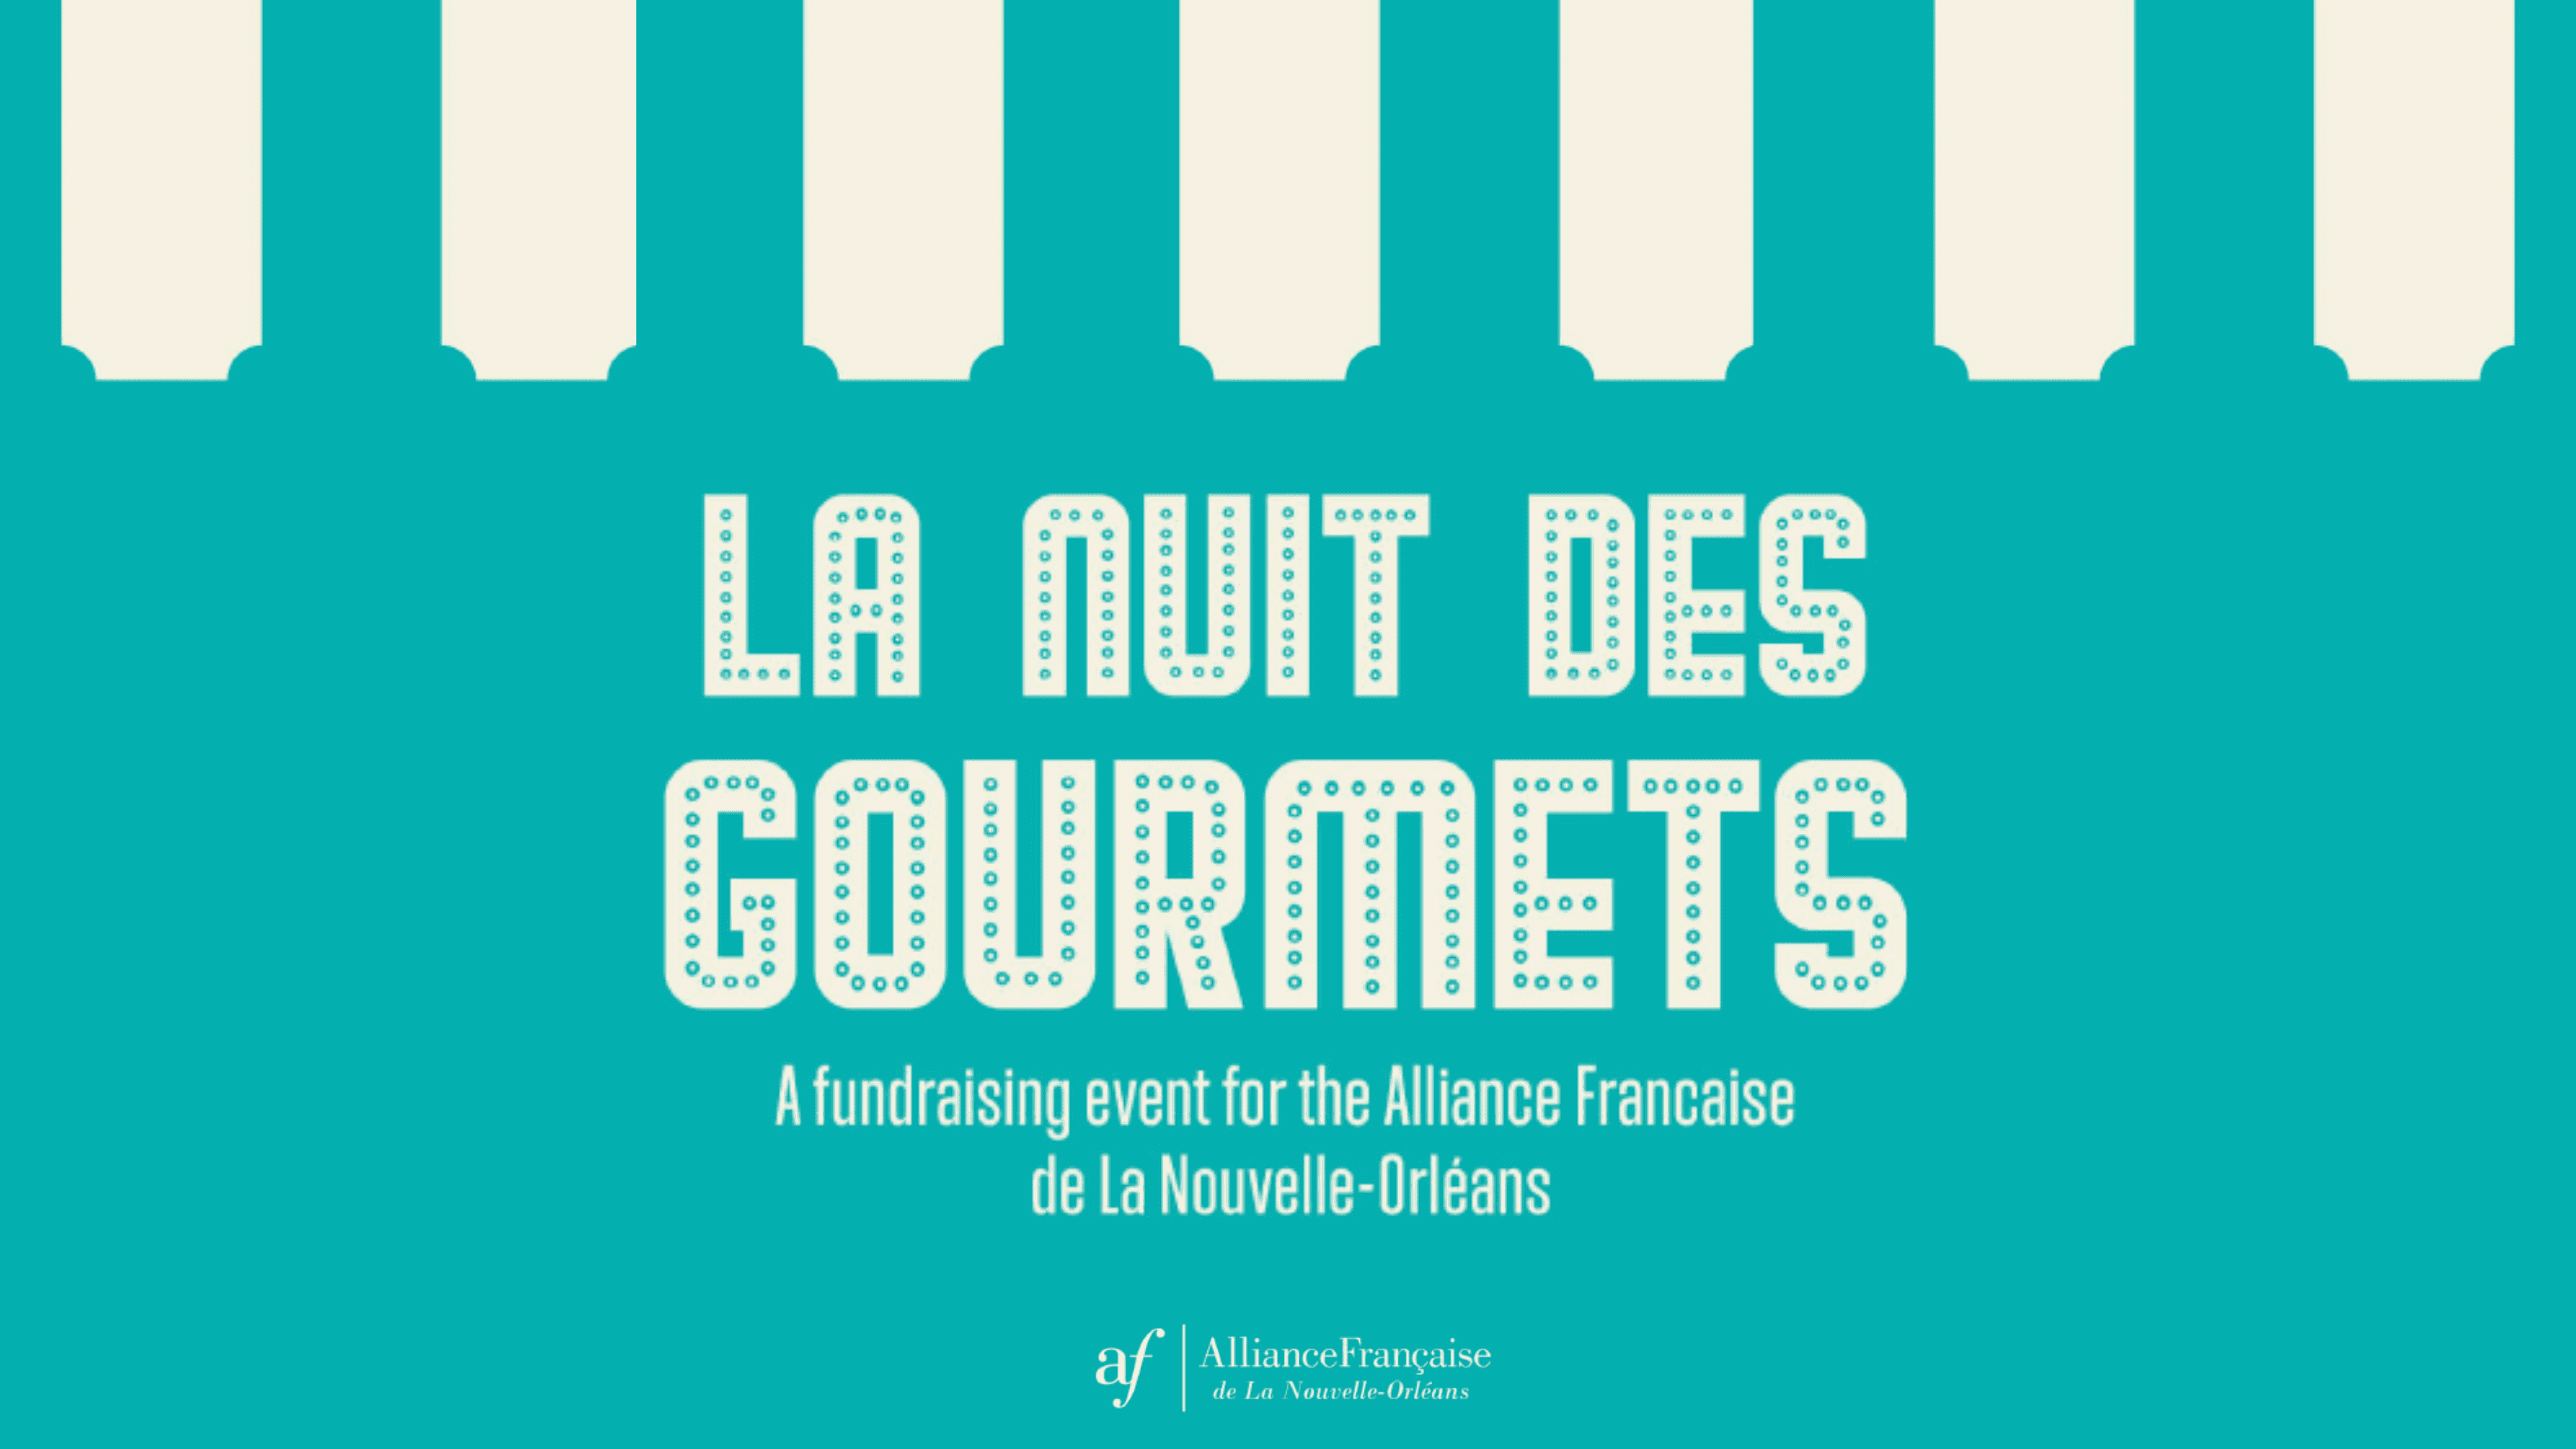 La Nuit des gourmets, A Fundraiser for the Alliance Française